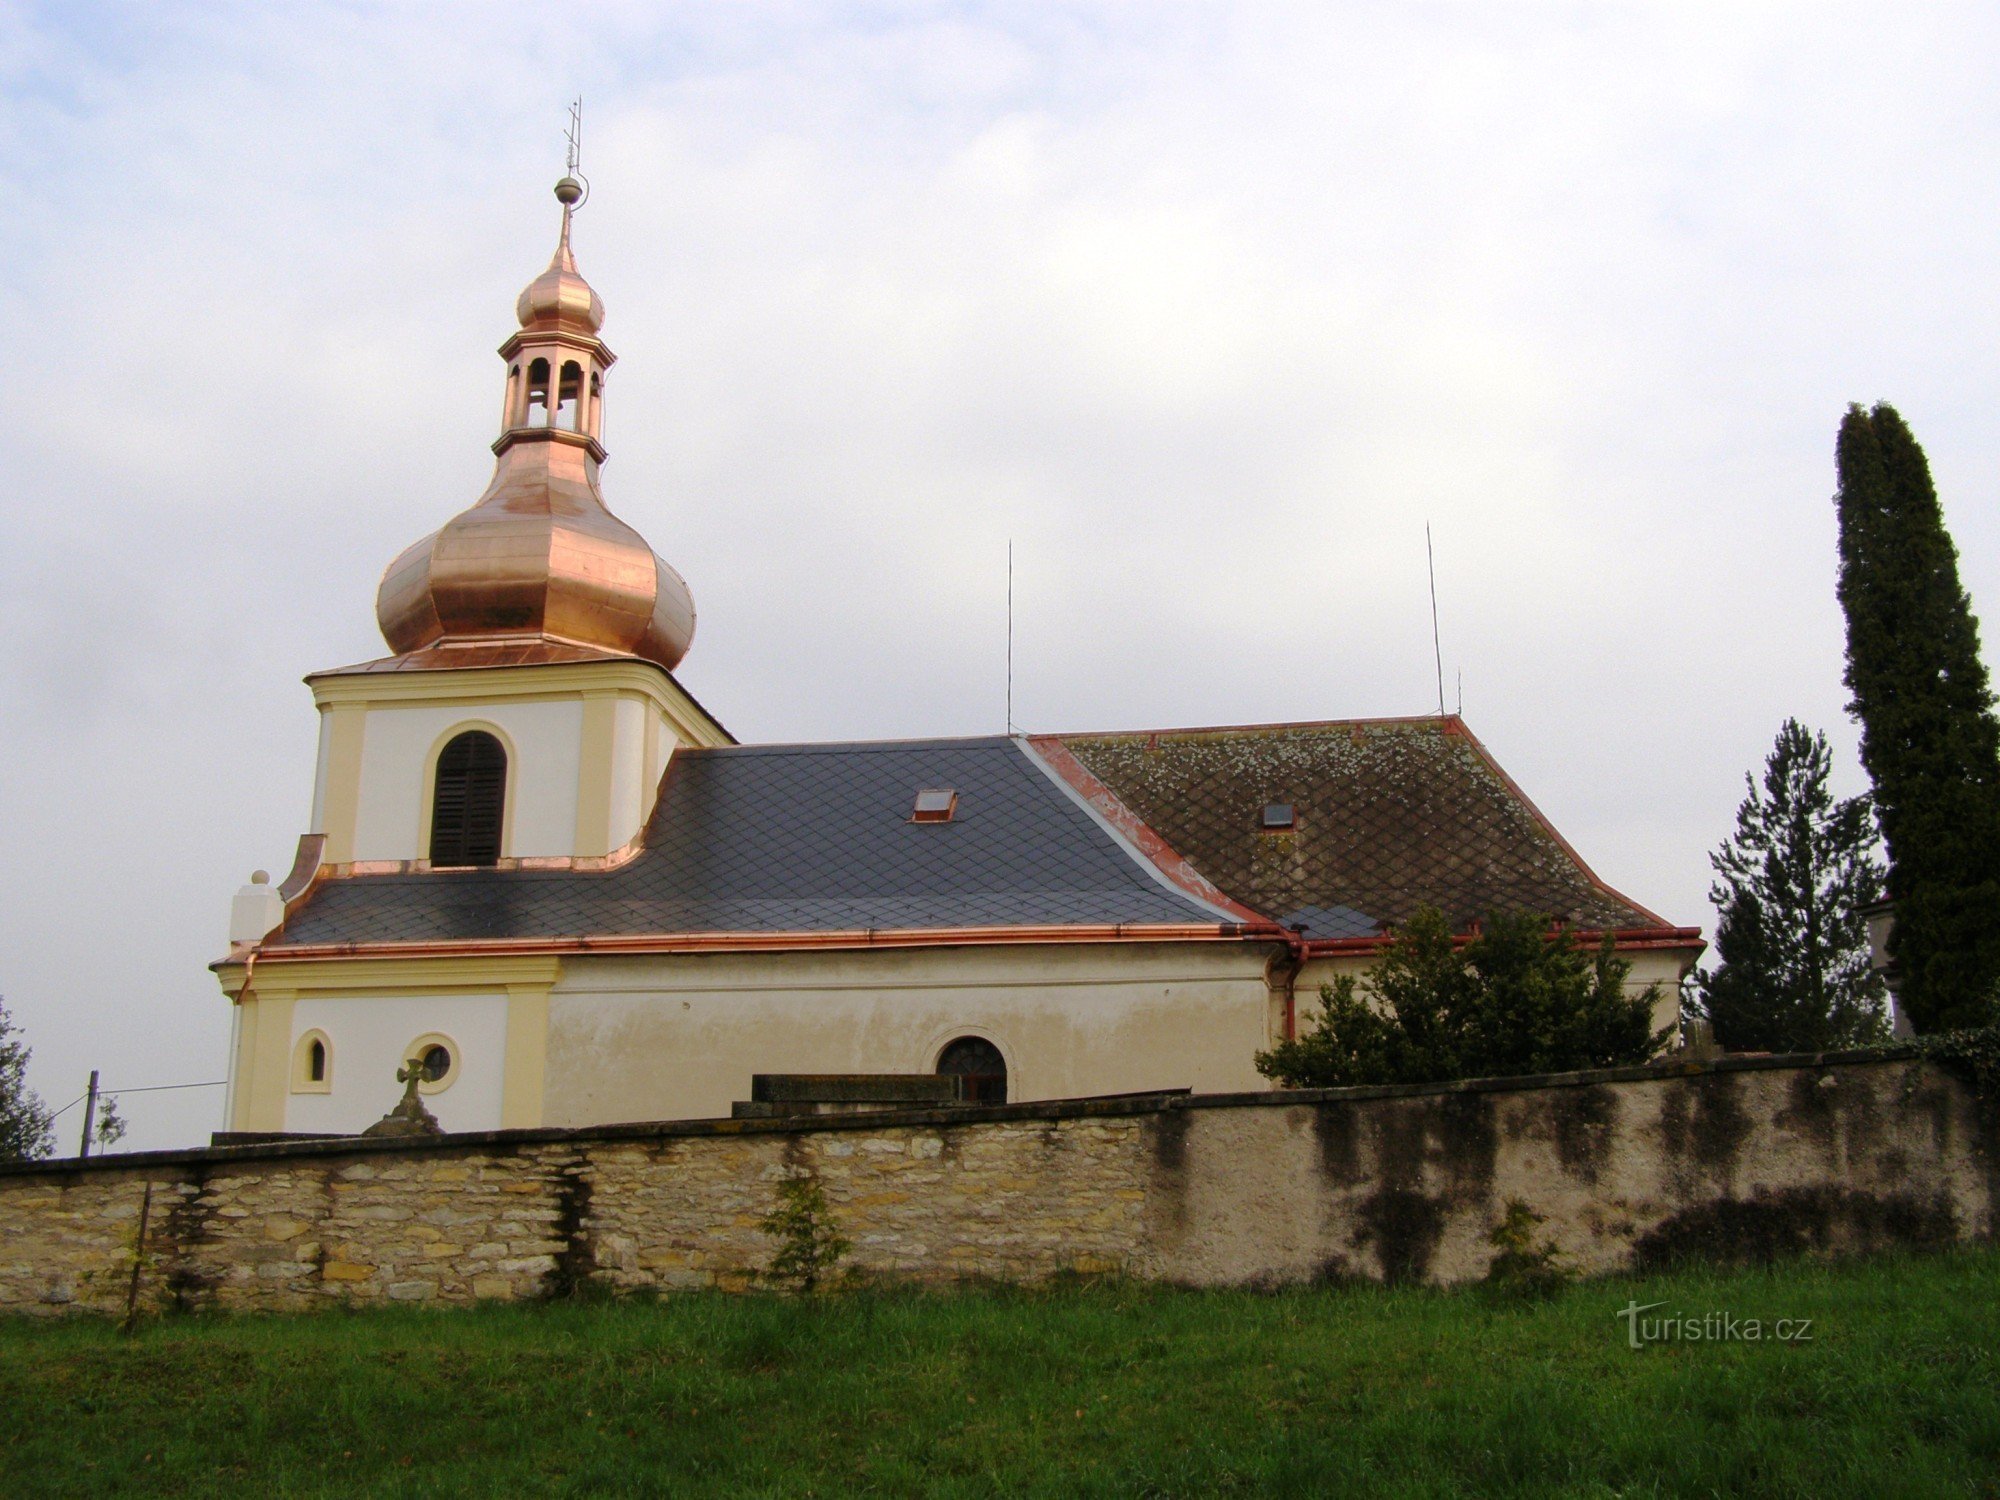 Běstovice - Alla helgons kyrka